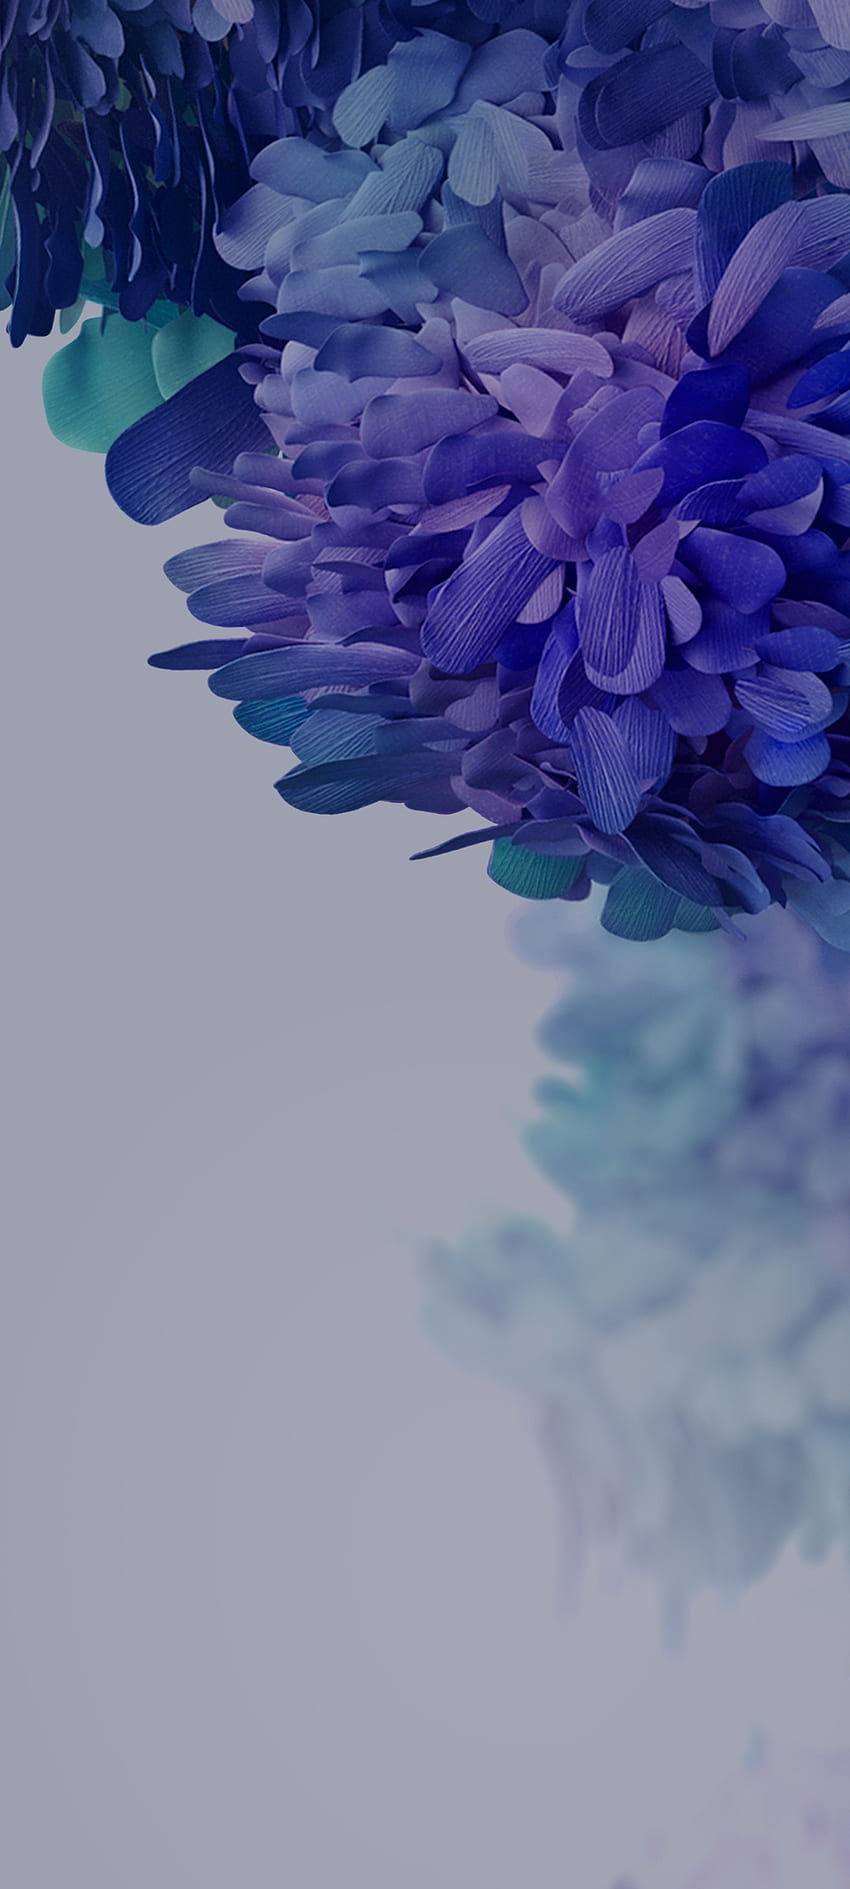 SamsungGalaxyS20FEnr.3, magenta, petal HD phone wallpaper | Pxfuel